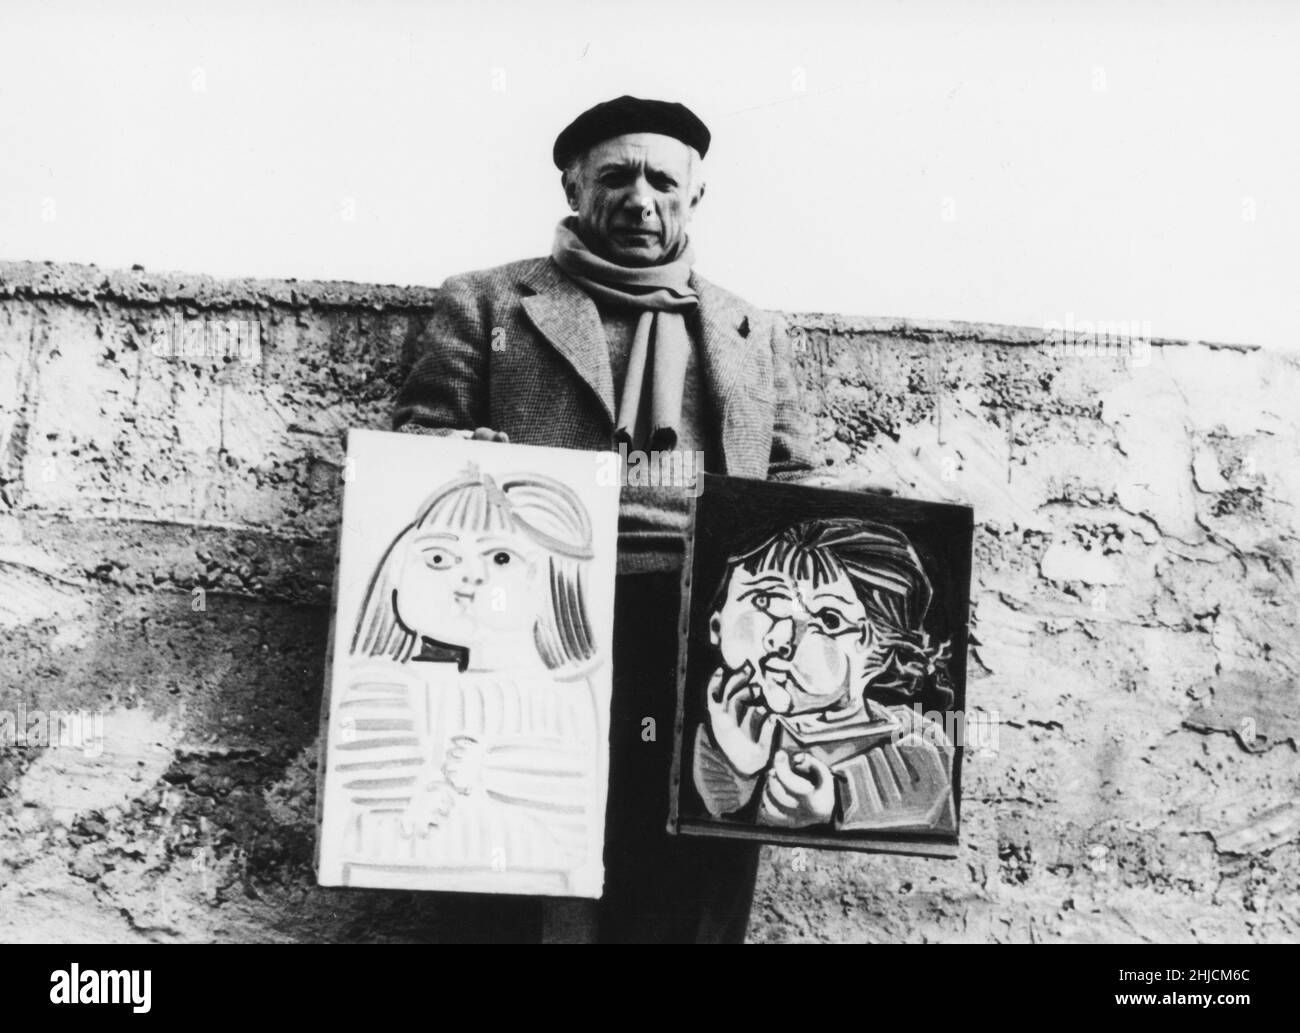 Ritratto dell'artista Pablo Picasso (1881-1973) con due suoi dipinti, ad Antibes, Francia, nel 1951. Foto Stock